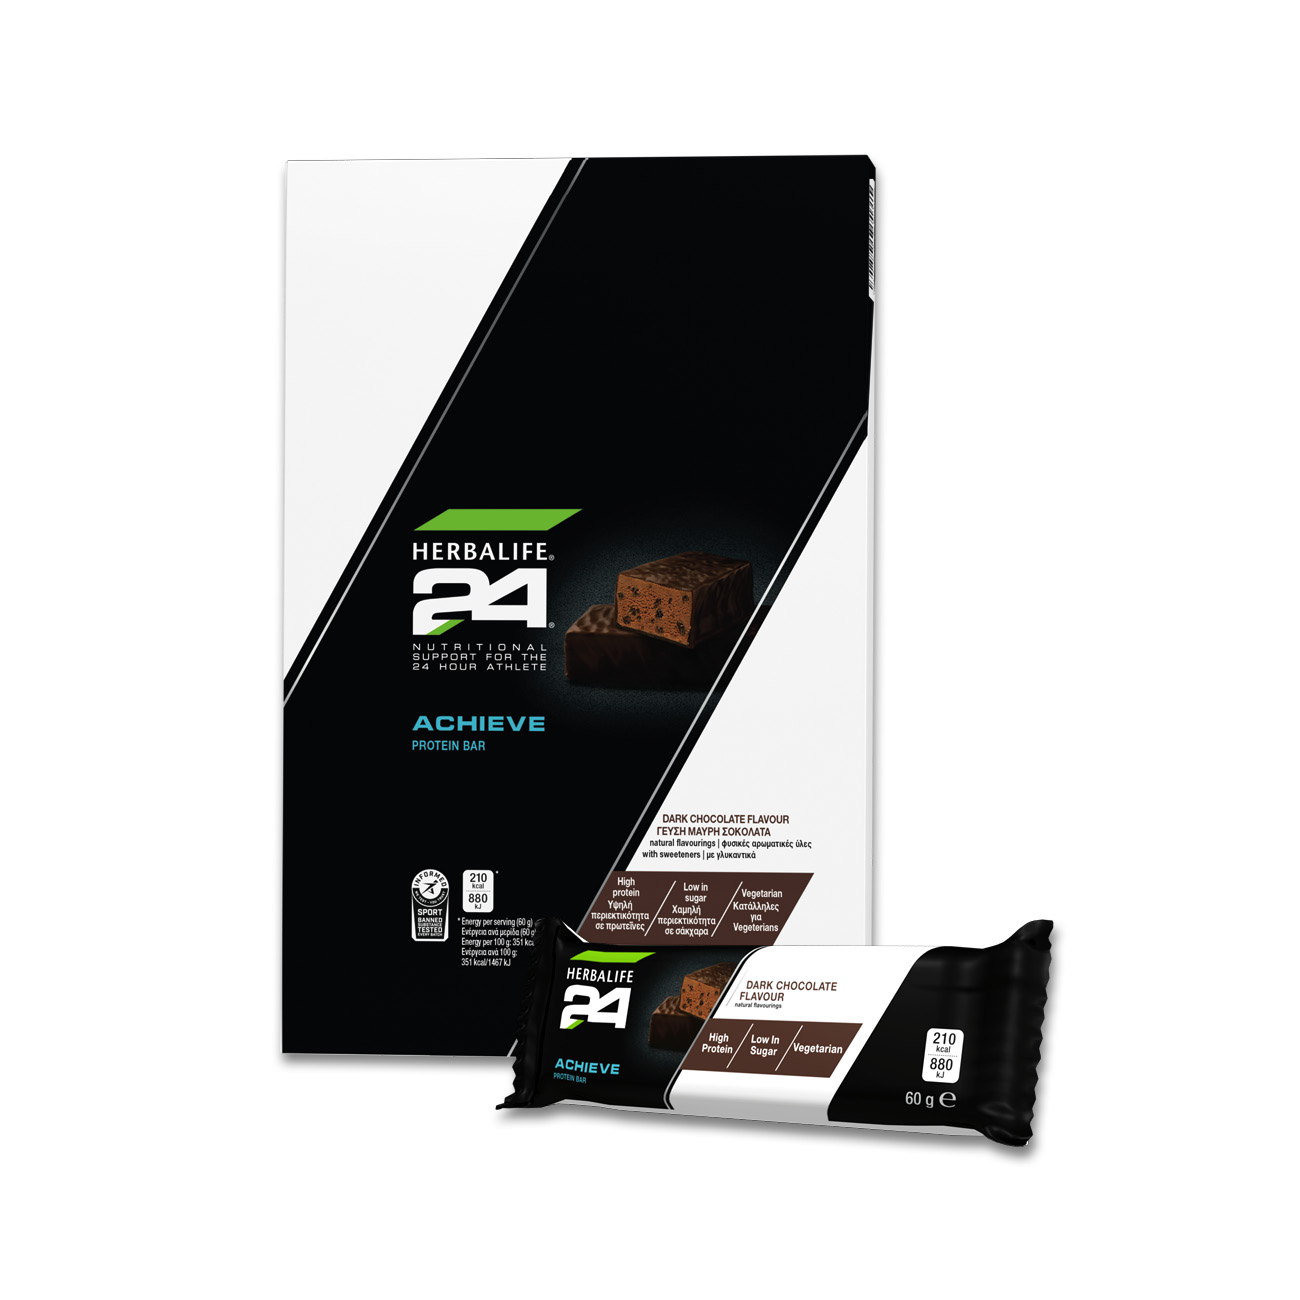 H24 Achieve Protein Bar Dark Chocolate: Herbalife.com - 3D Render 1300x1300px